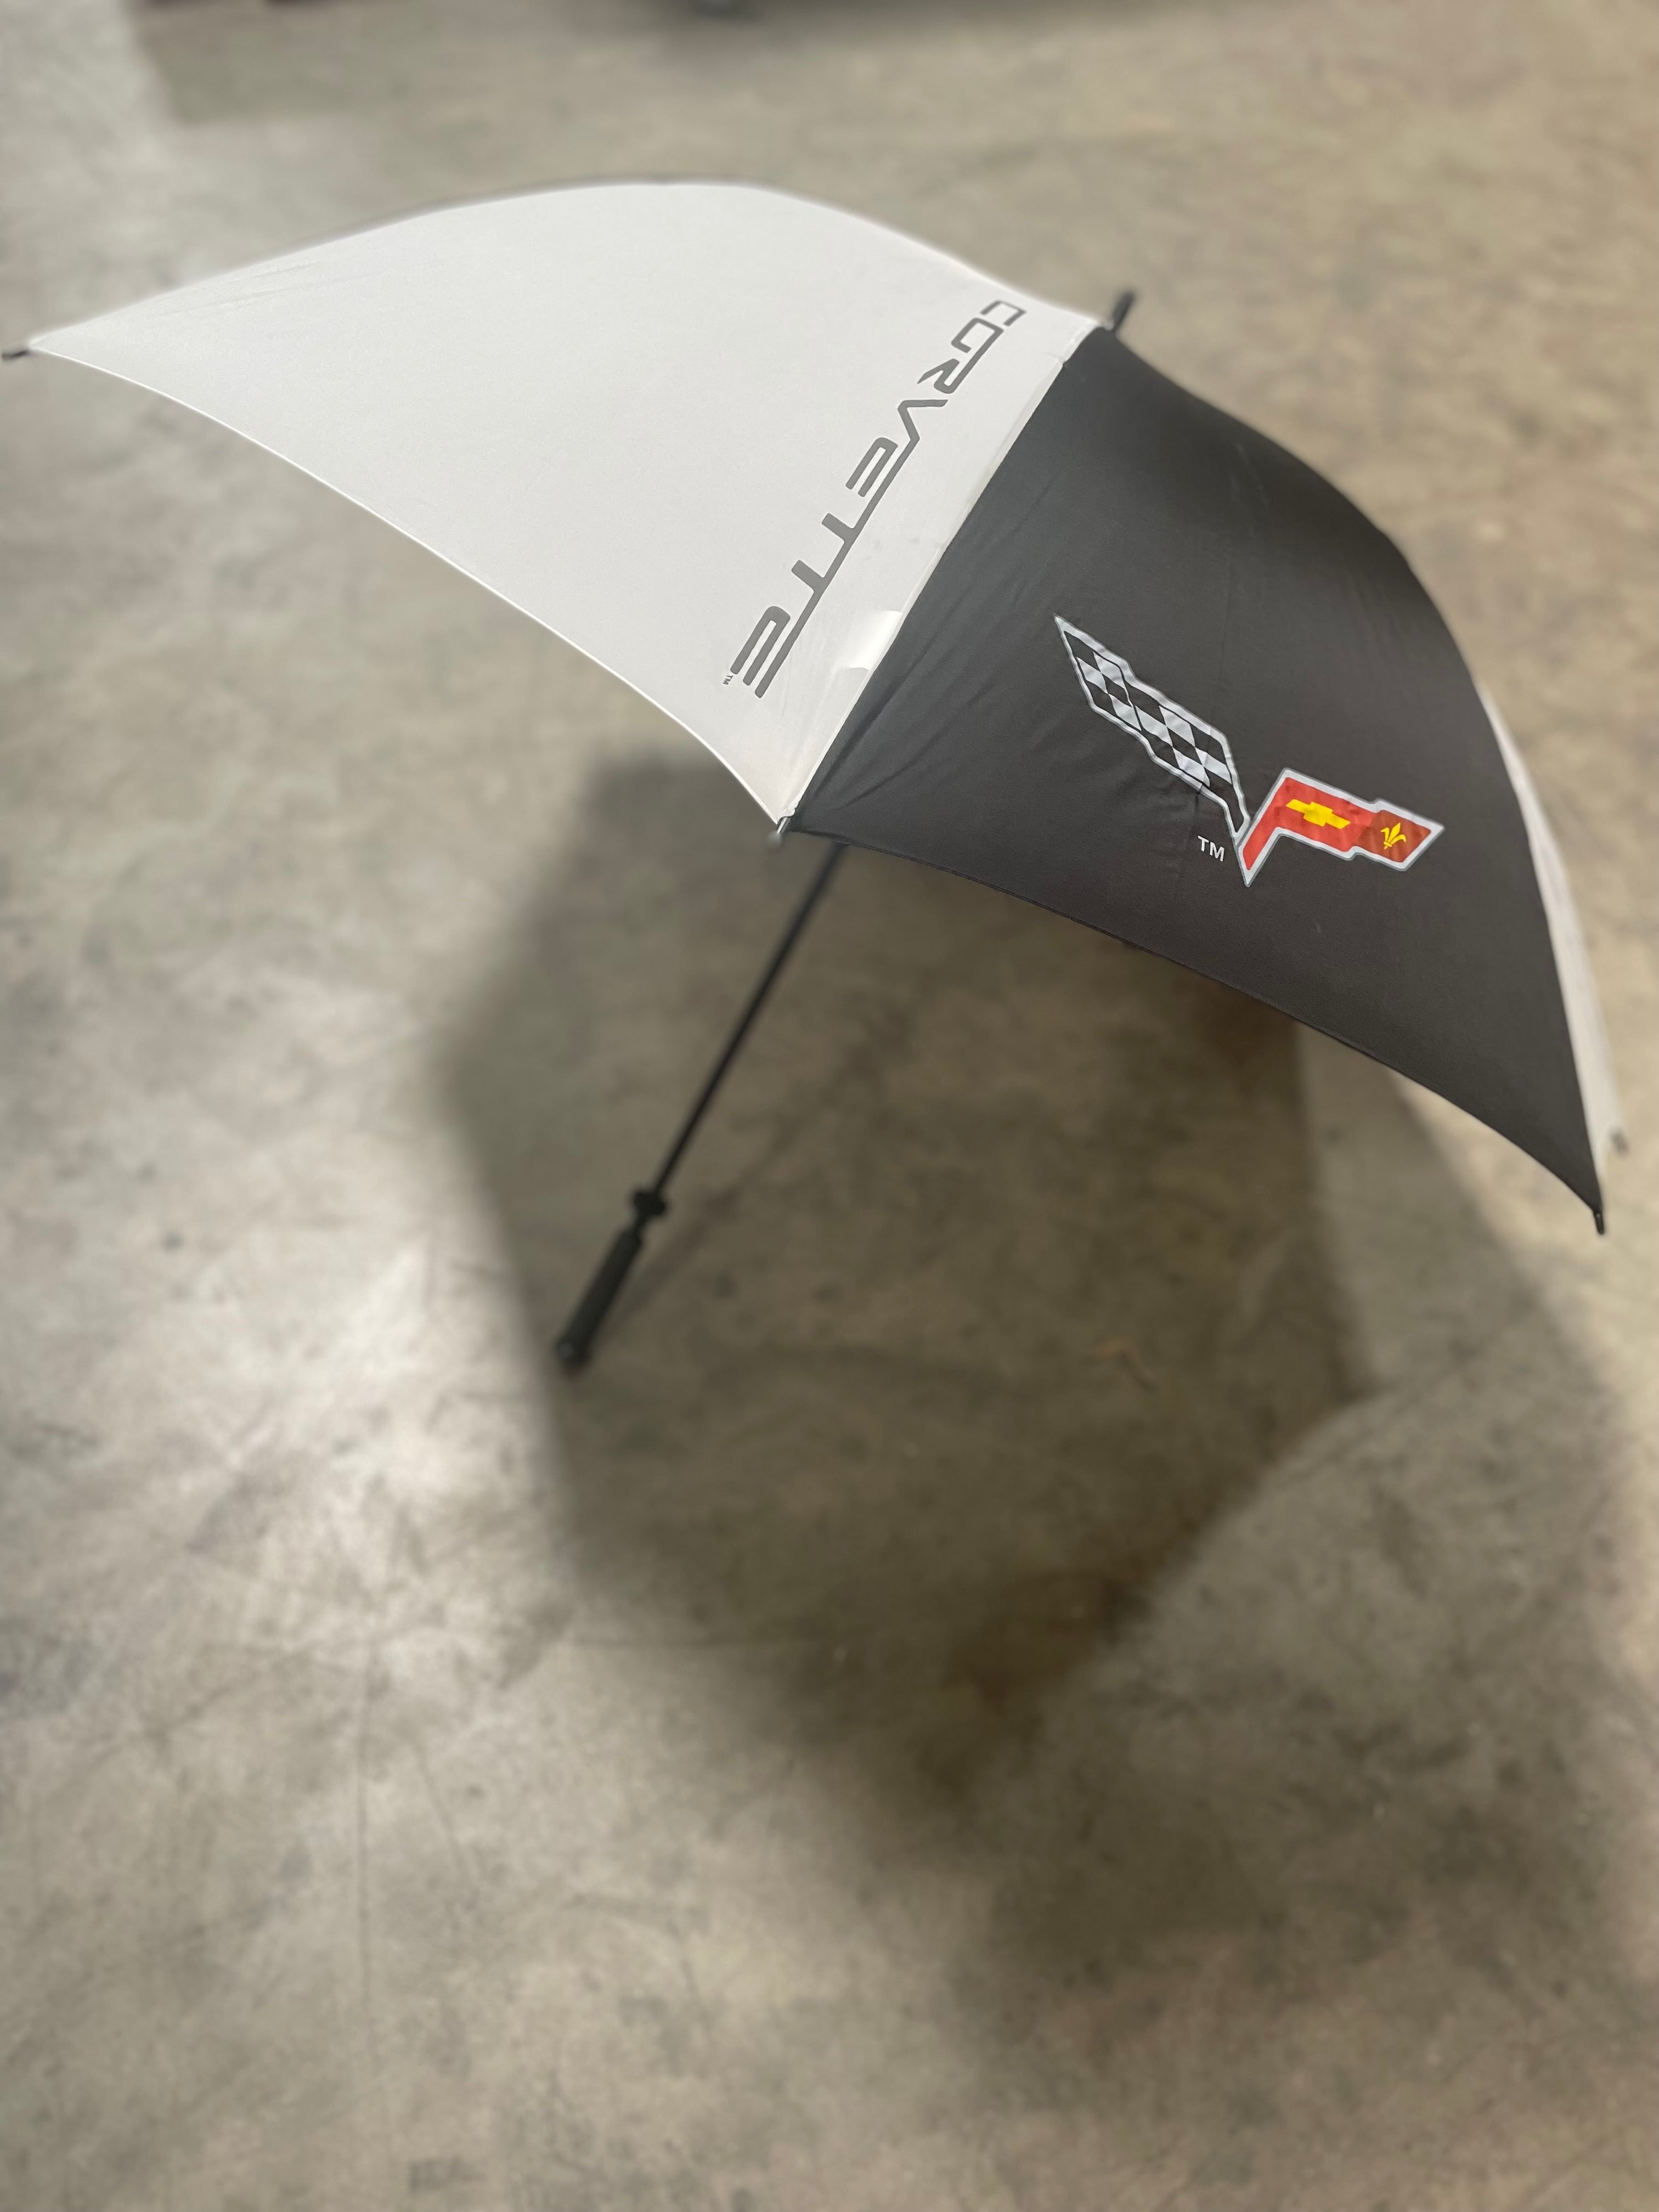 C6 Corvette Golf Umbrella